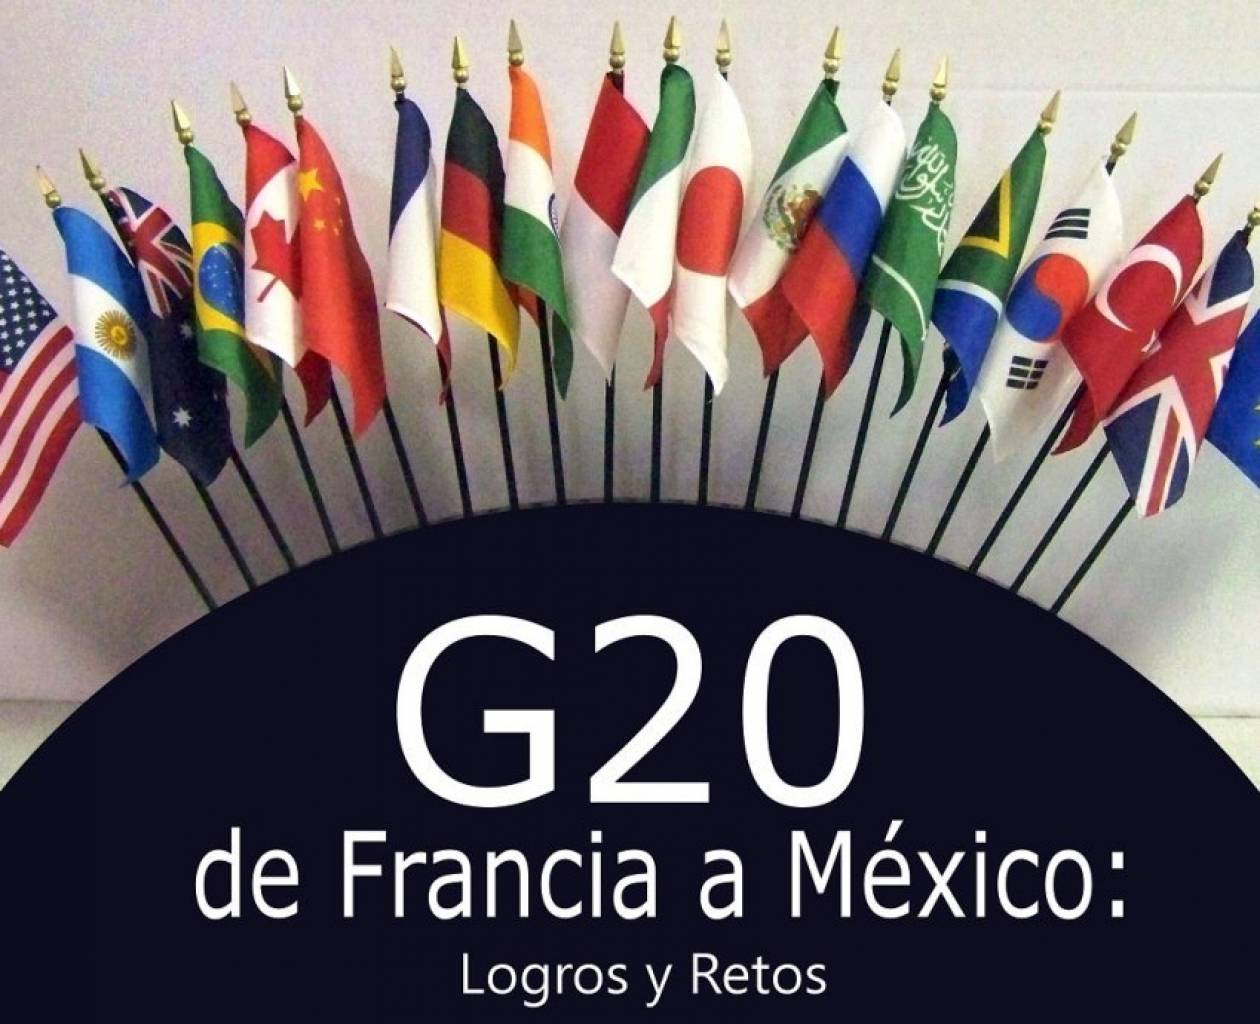 Τα αποτελέσματα της συνόδου των G20 στο Μεξικό